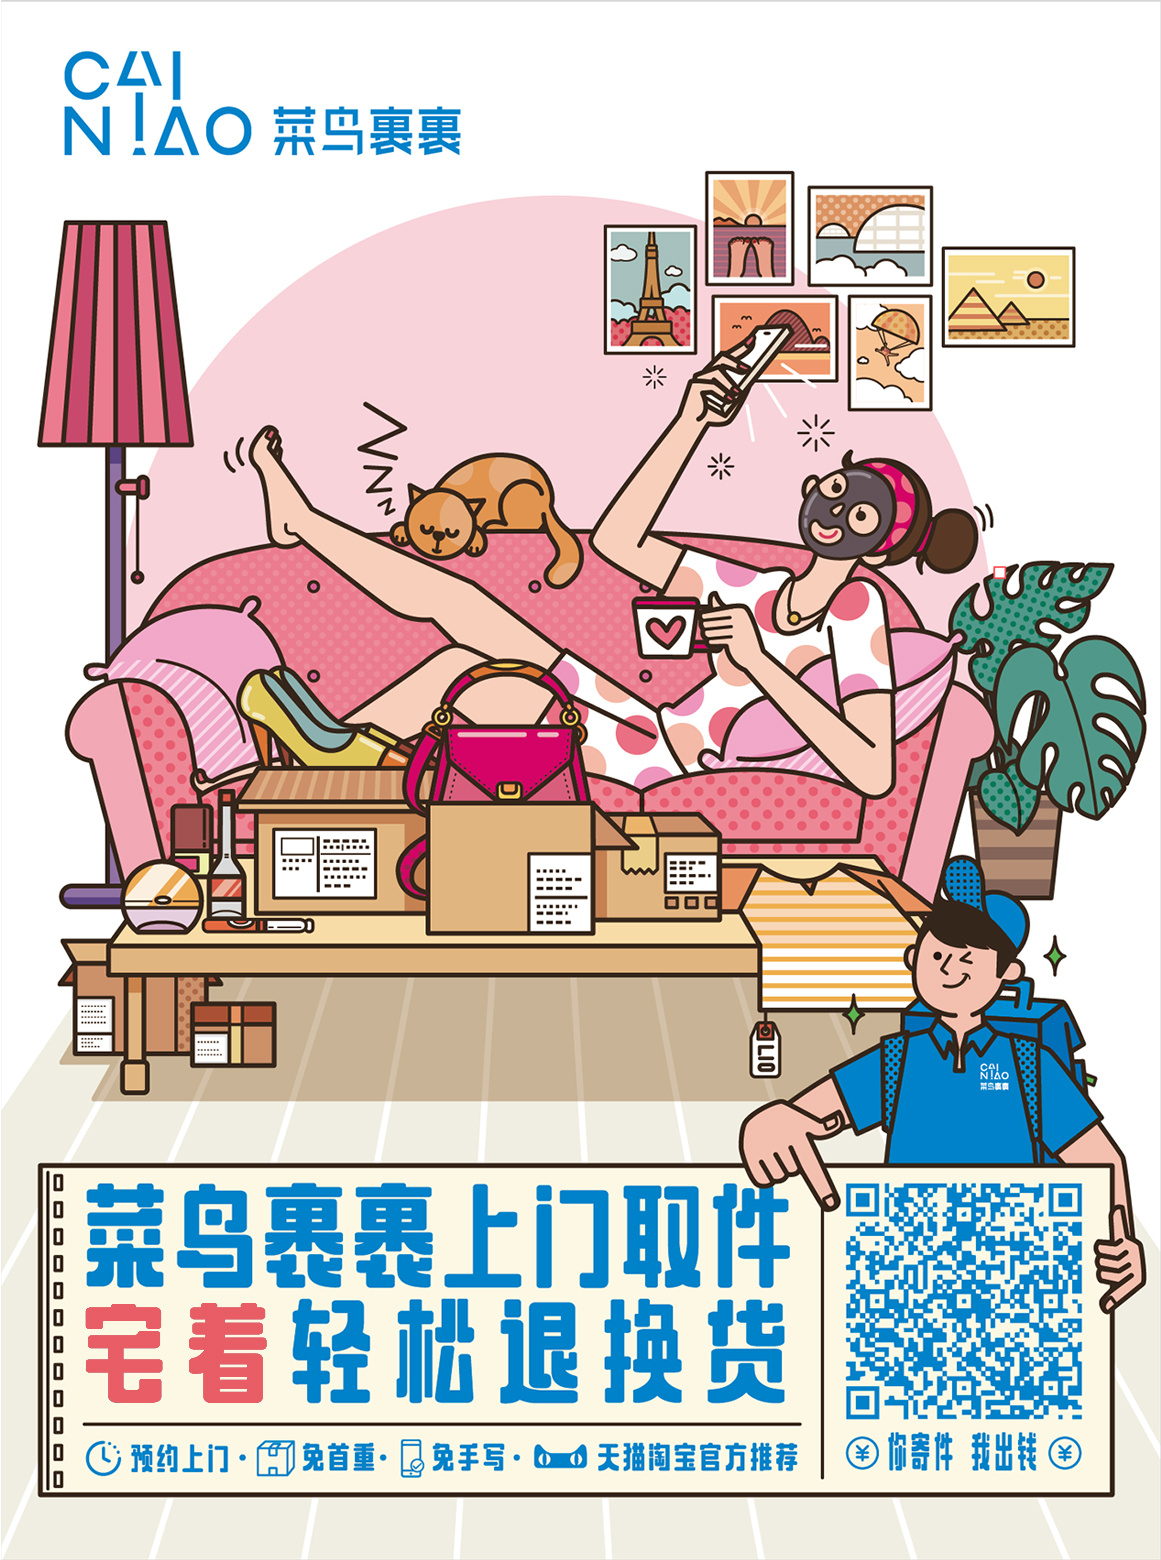 中国最“菜鸟”的LOGO来了，菜鸟网络全新品牌标识发布 - 设计类揭晓 - 征集码头网